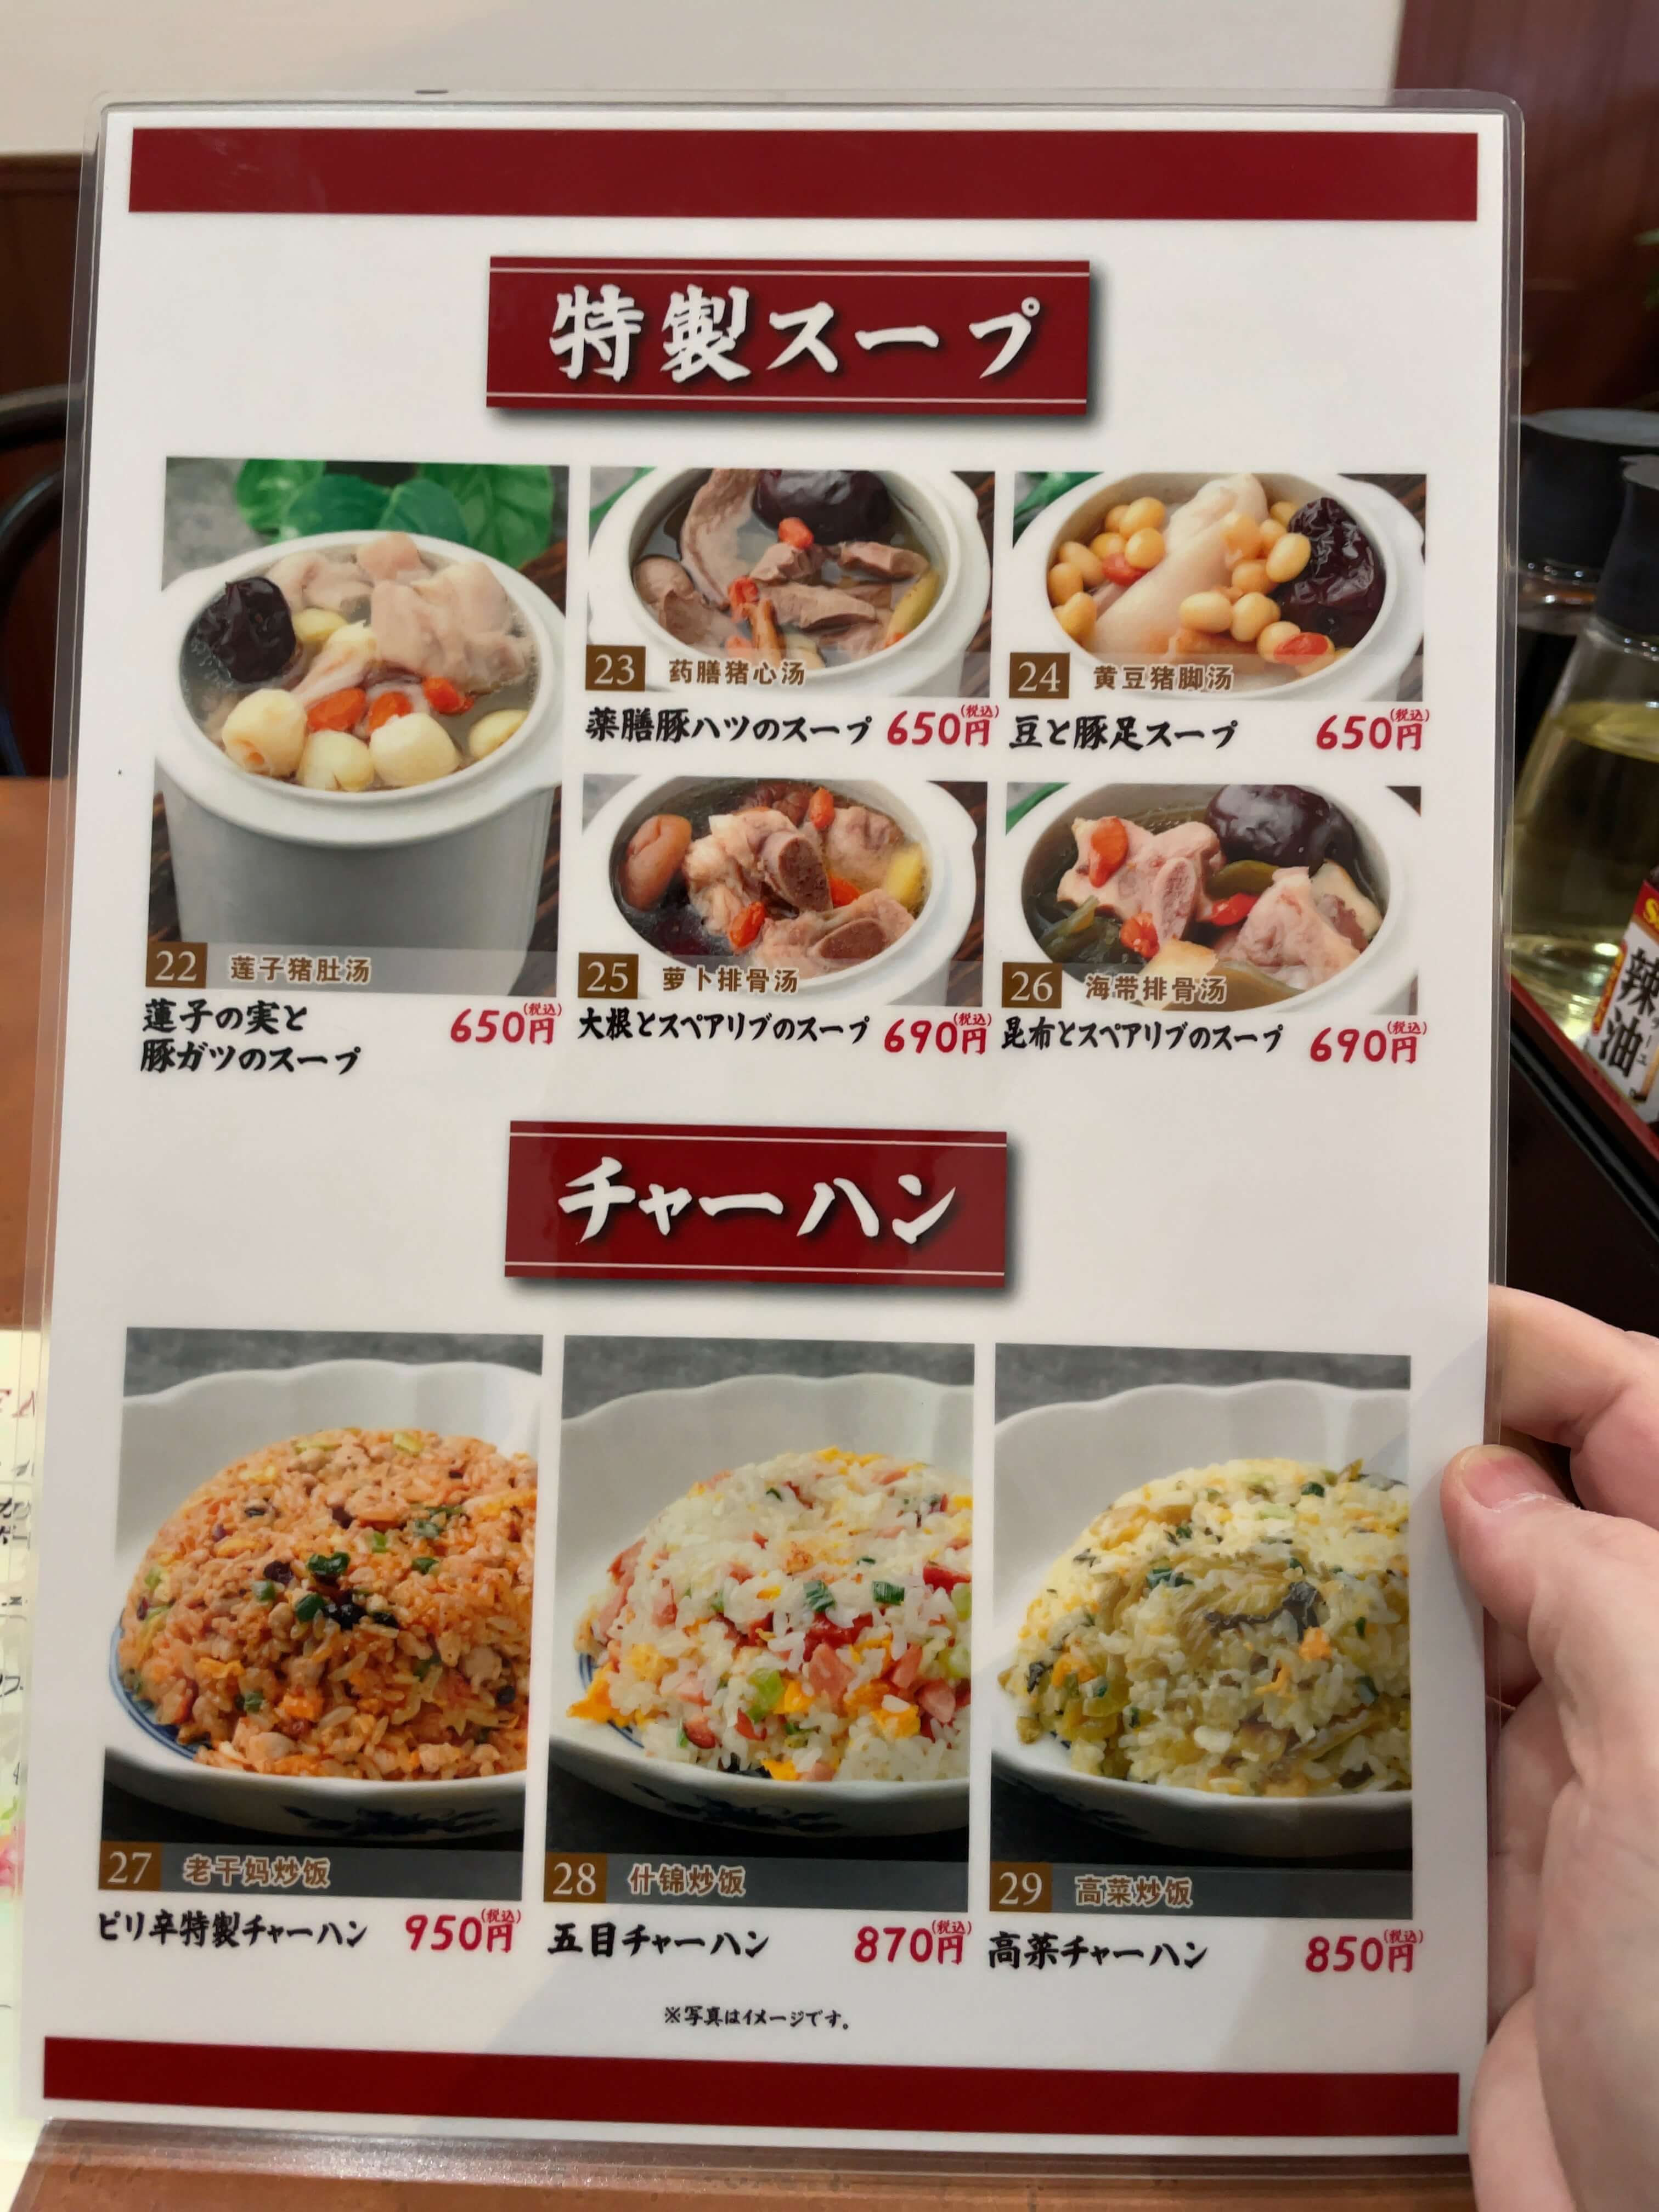 上海麺館　menu